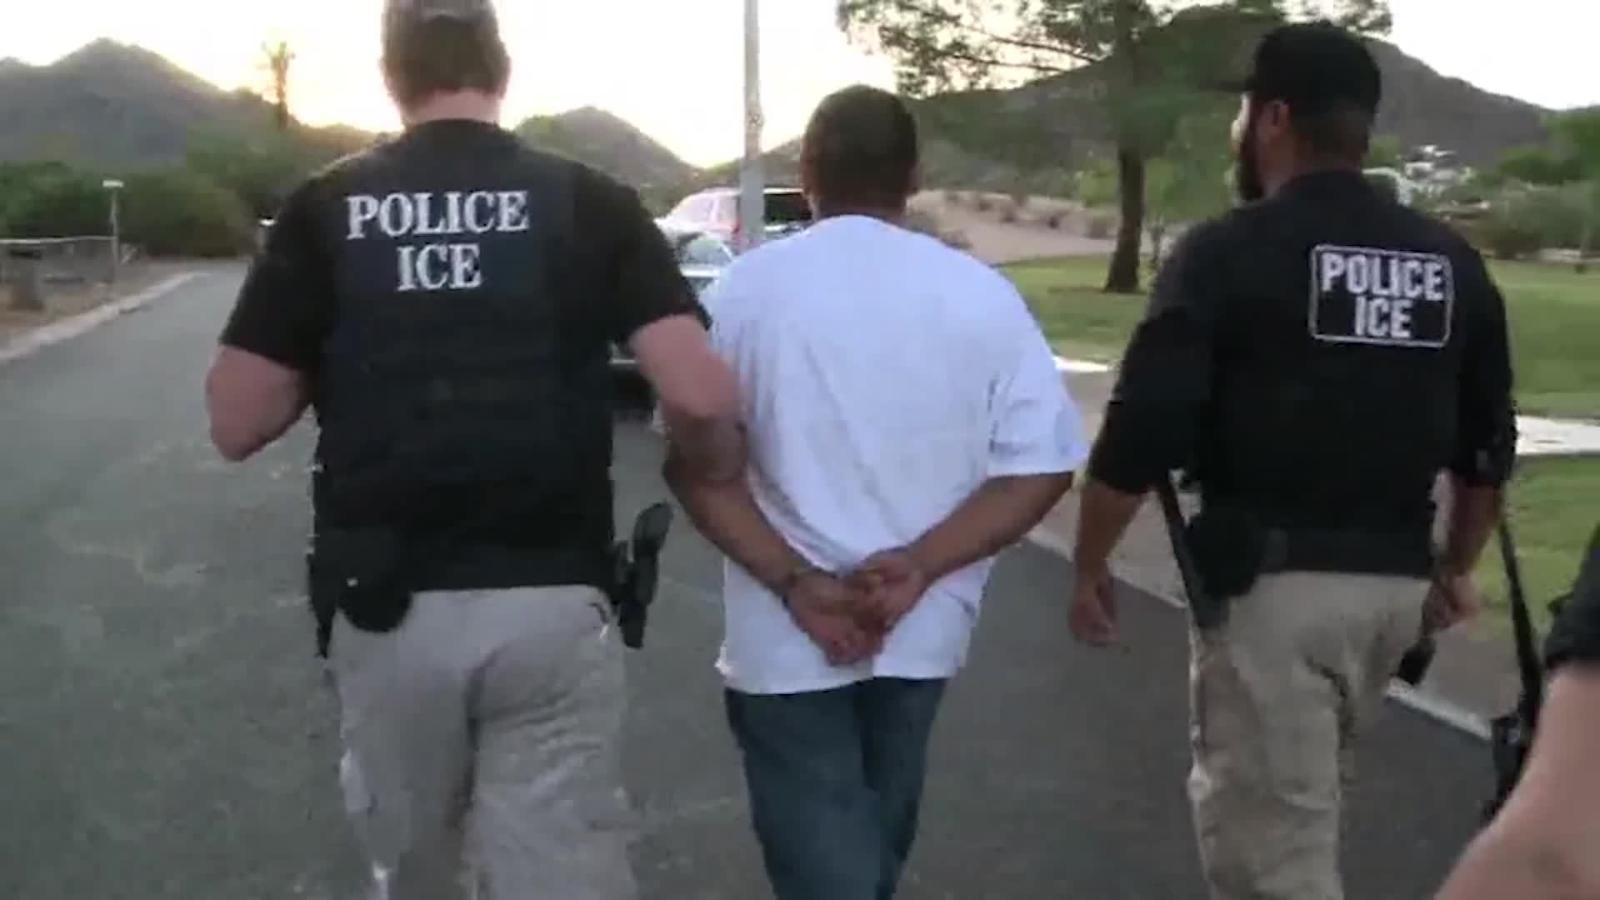 Redadas del ICE atemorizan a inmigrantes en EE.UU.